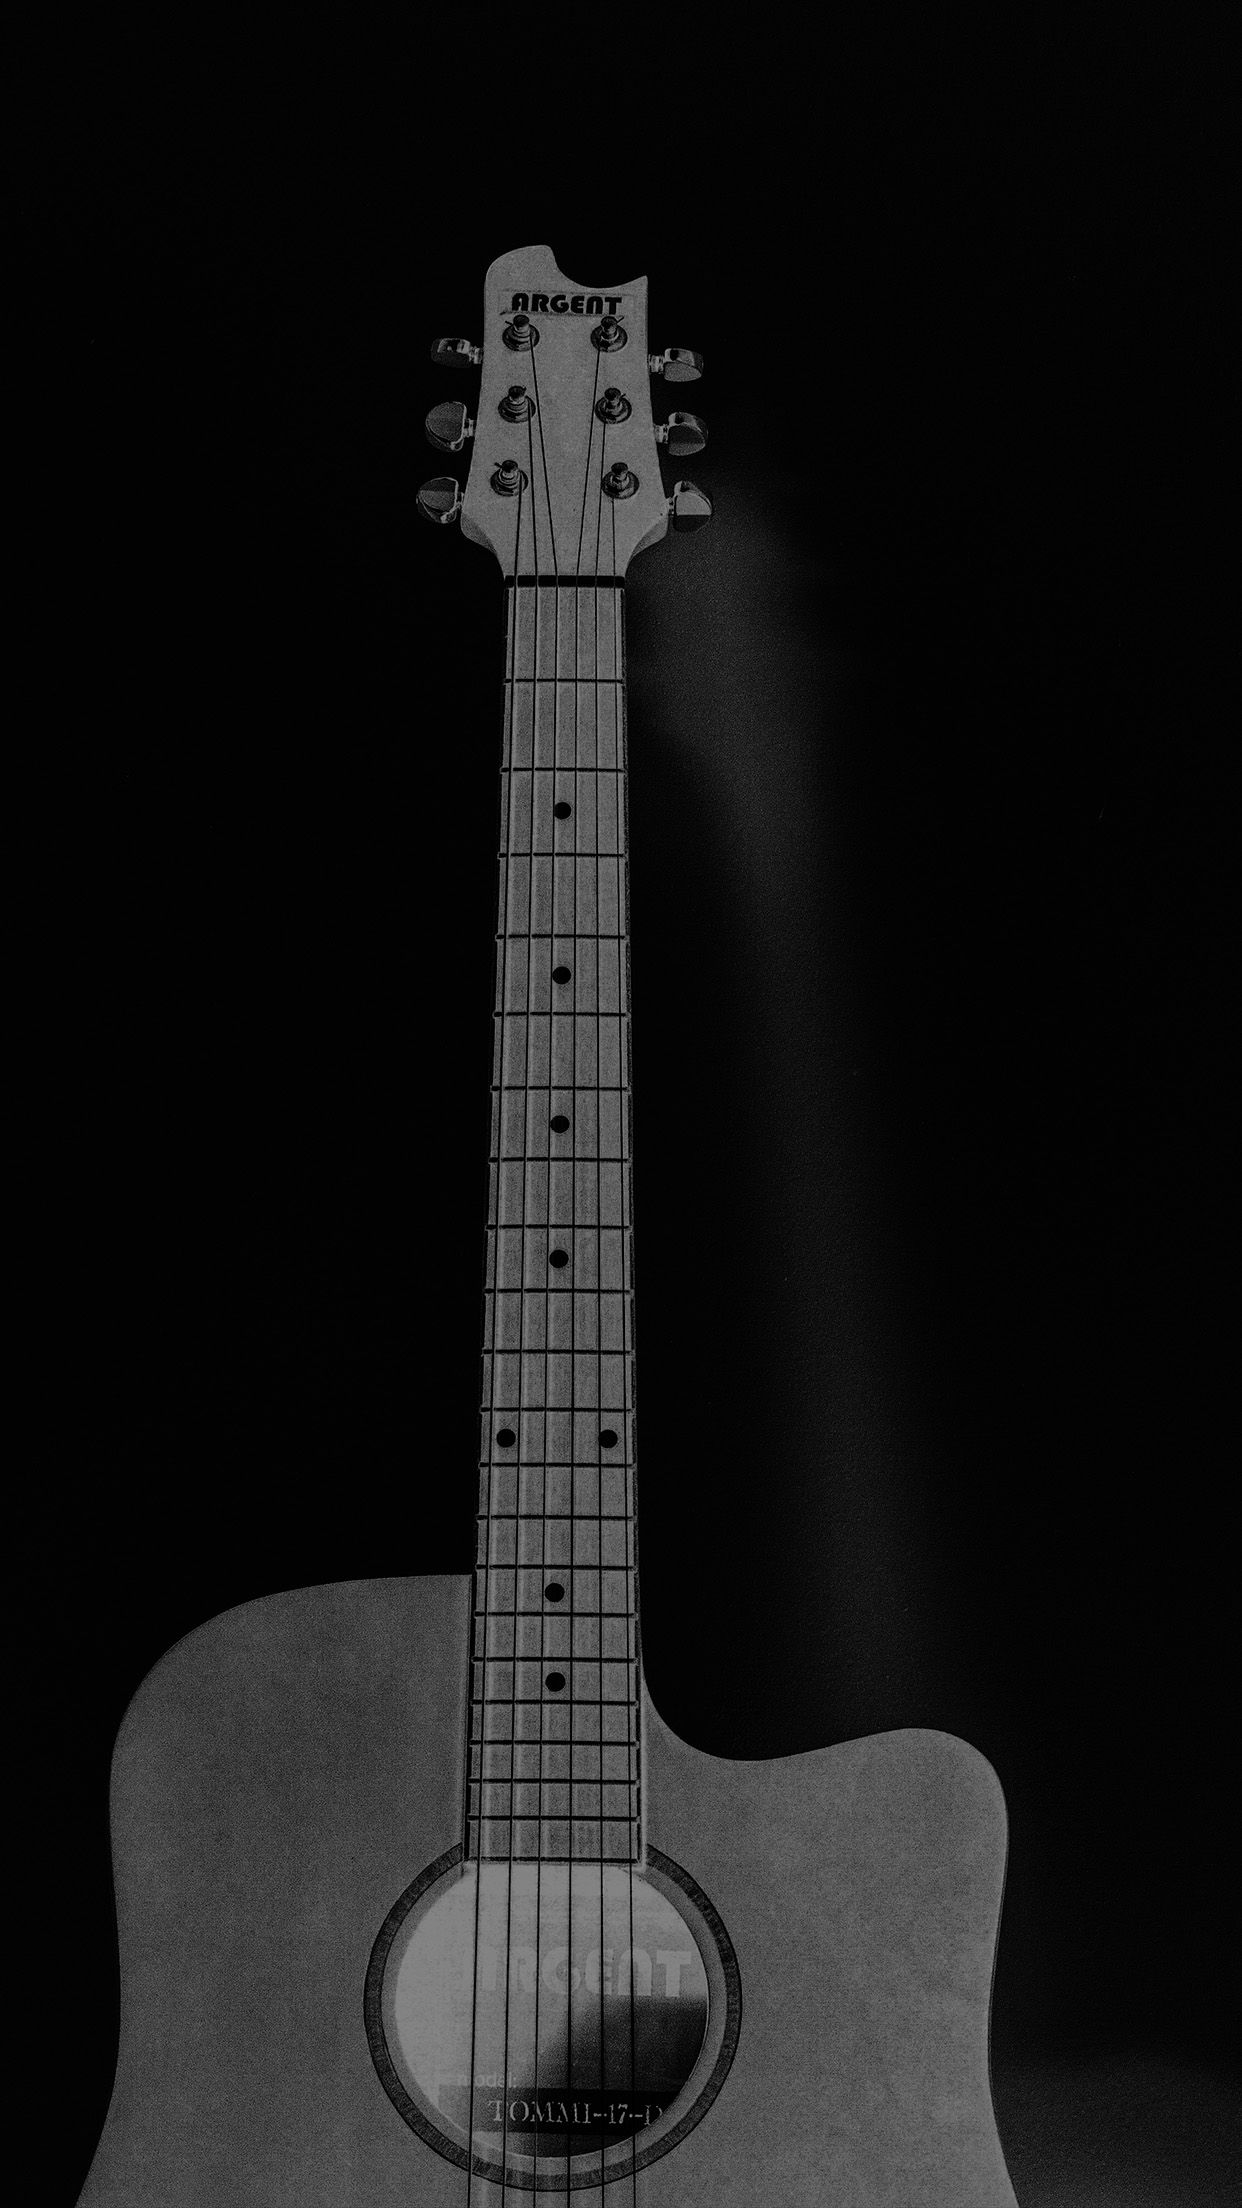 iPhone Black Guitar Wallpaper HD